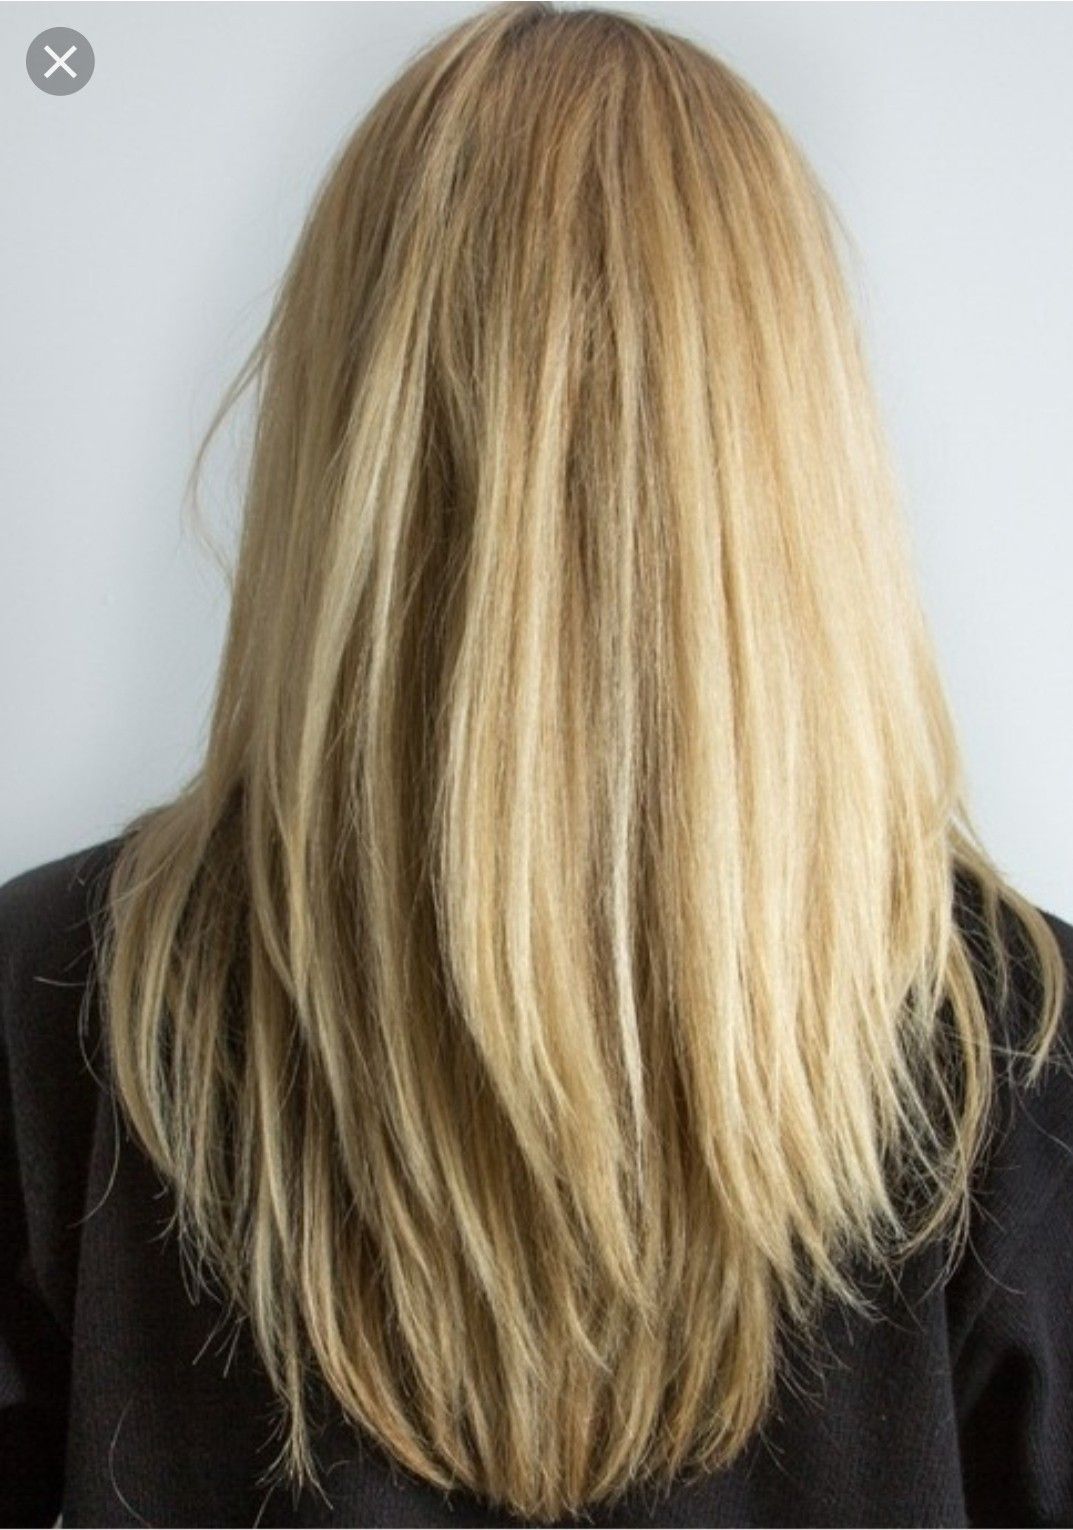 Каскад на длинные волосы фото на прямые волосы